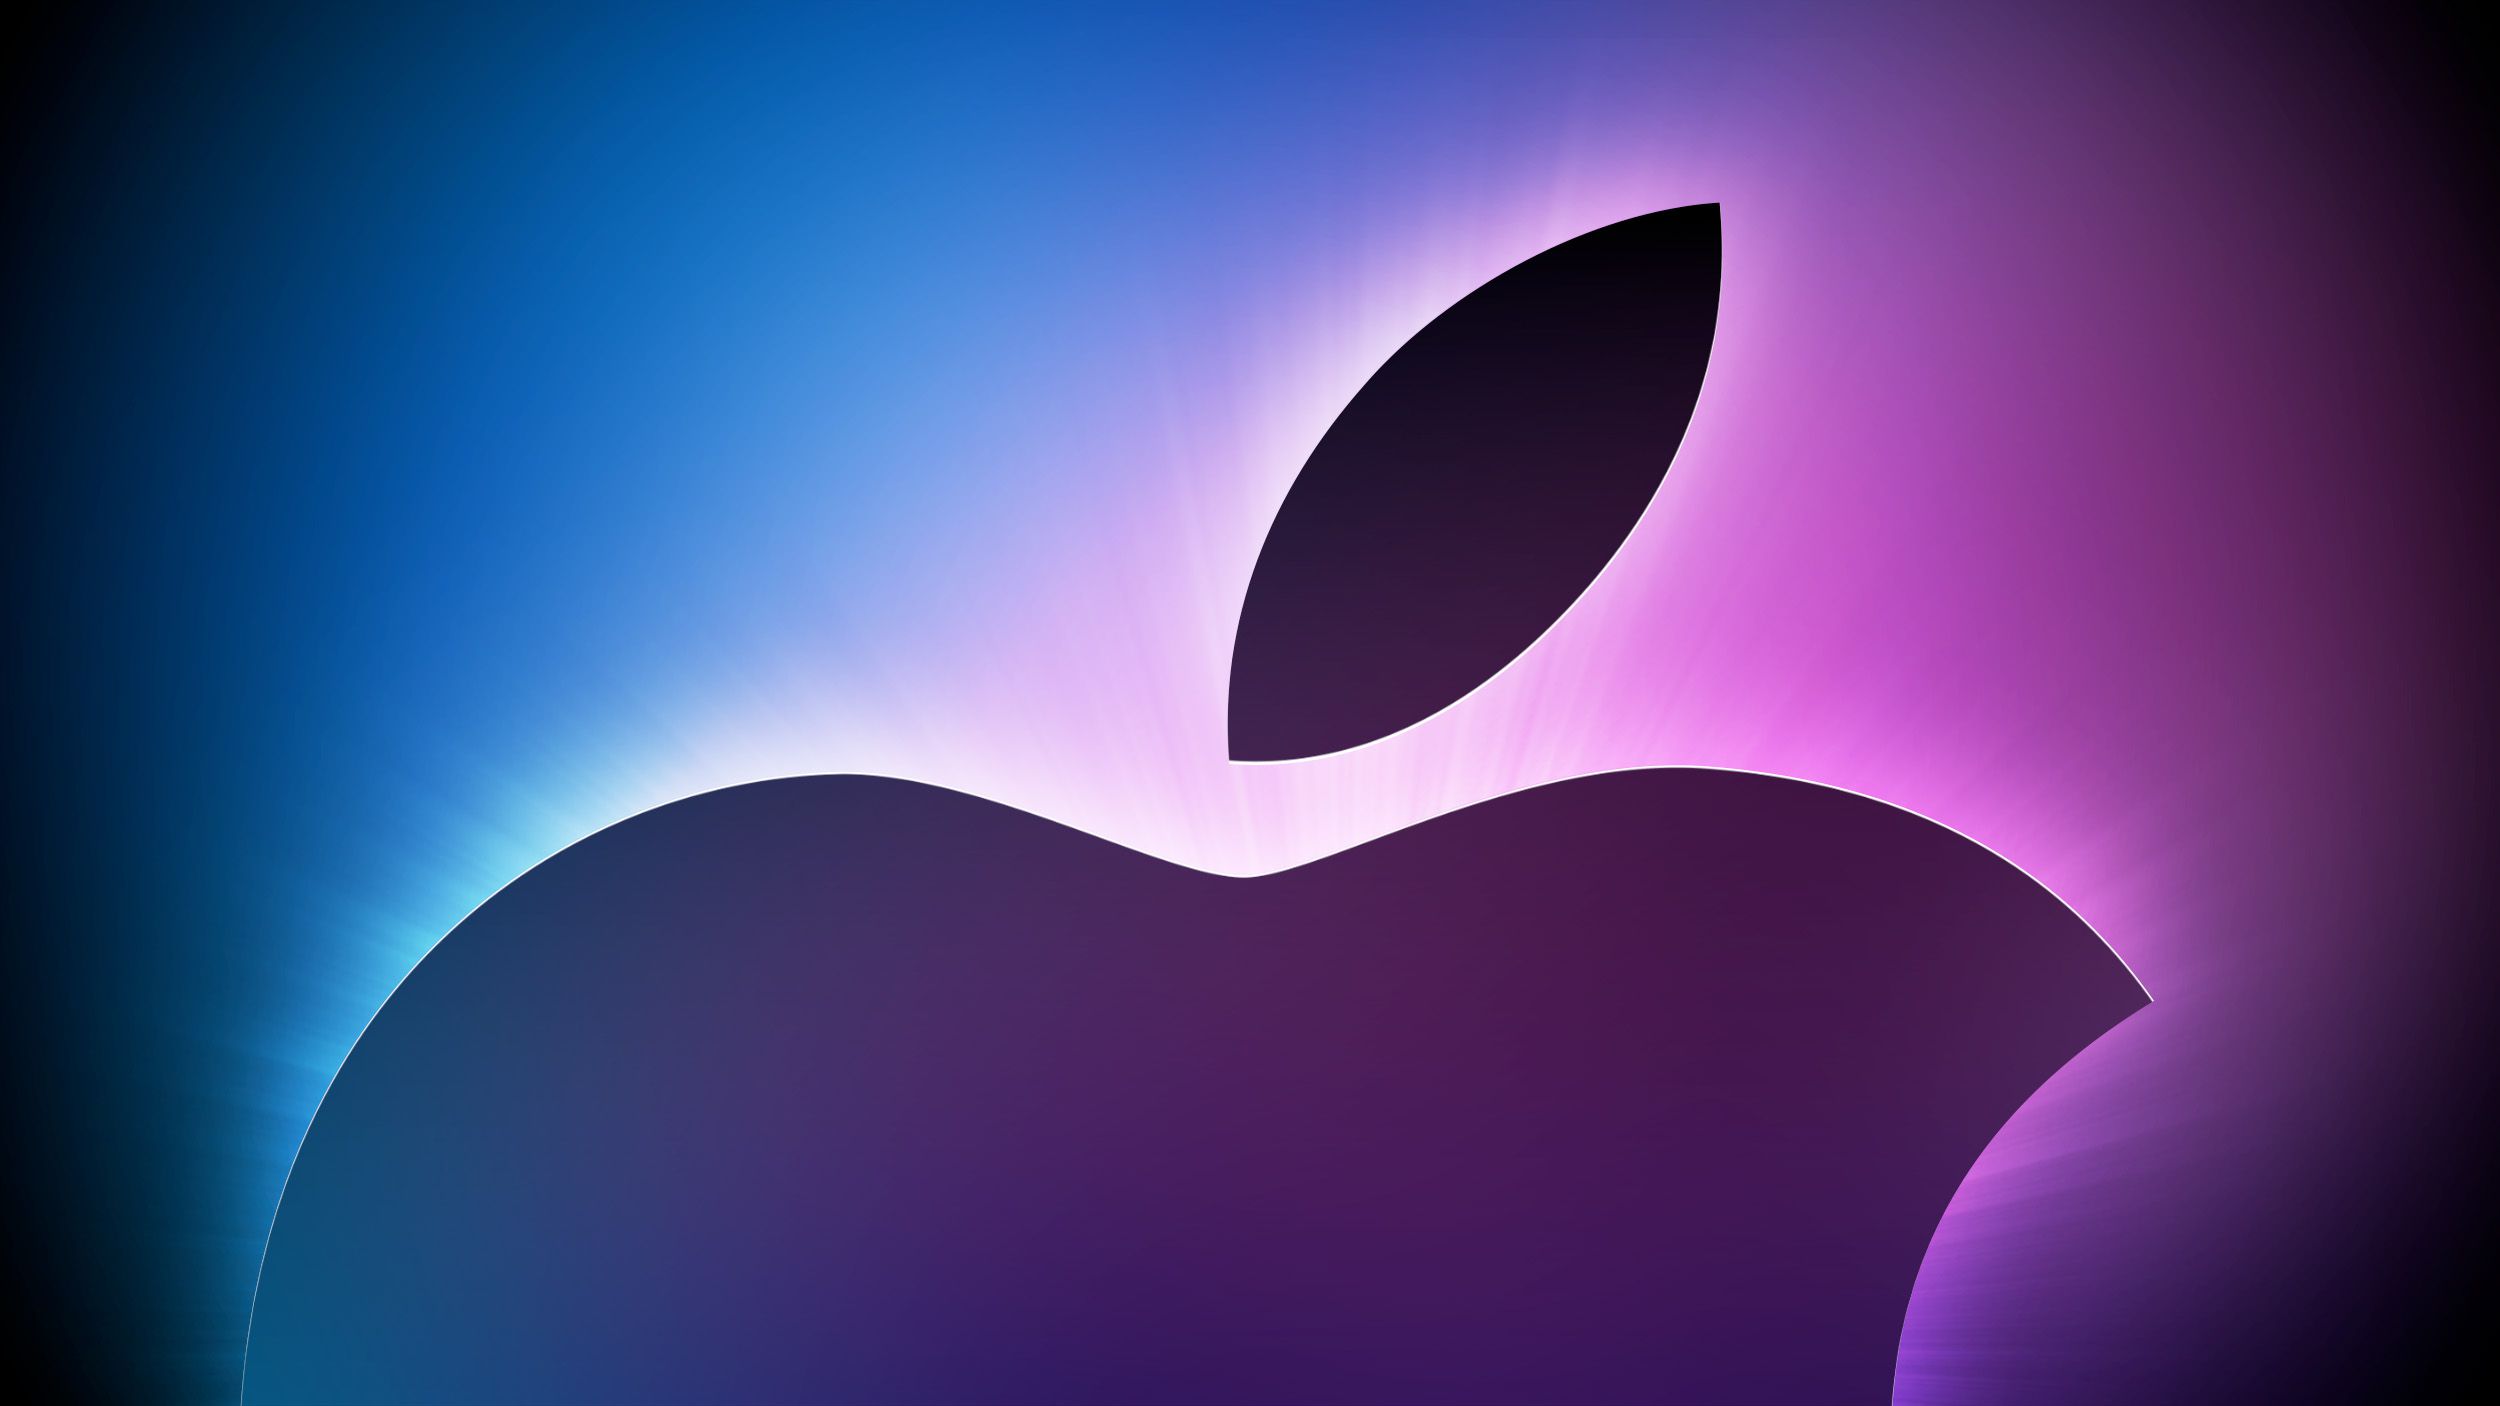 Gurman : « De nombreux nouveaux Mac » seront annoncés dans les keynotes de la WWDC « L’un des plus anciens d’Apple jamais exécutés » la semaine prochaine